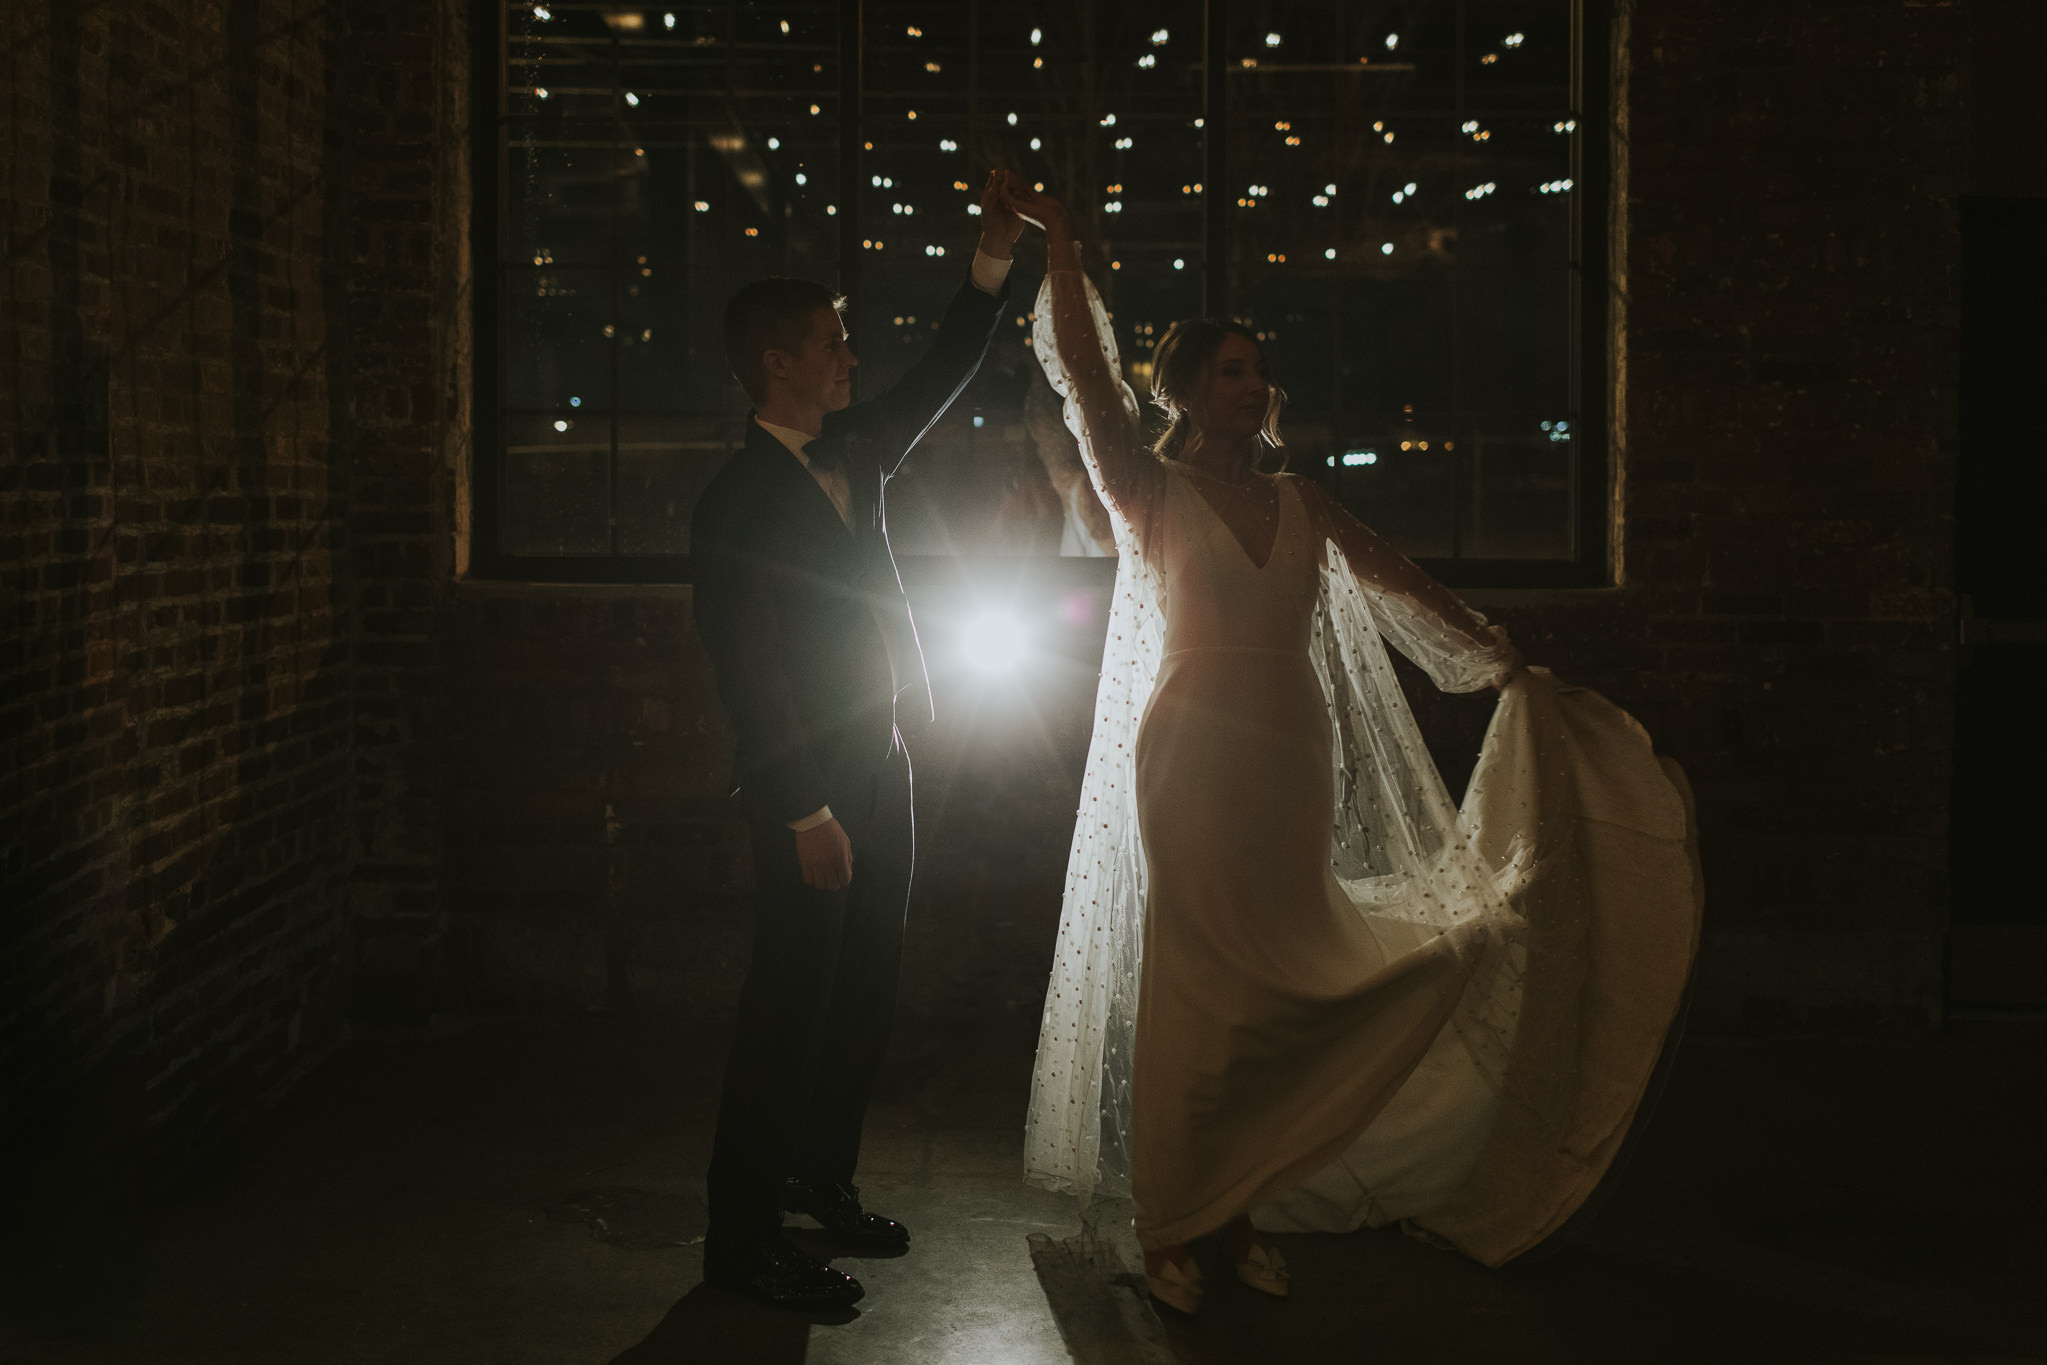 Indianapolis Wedding Photographers